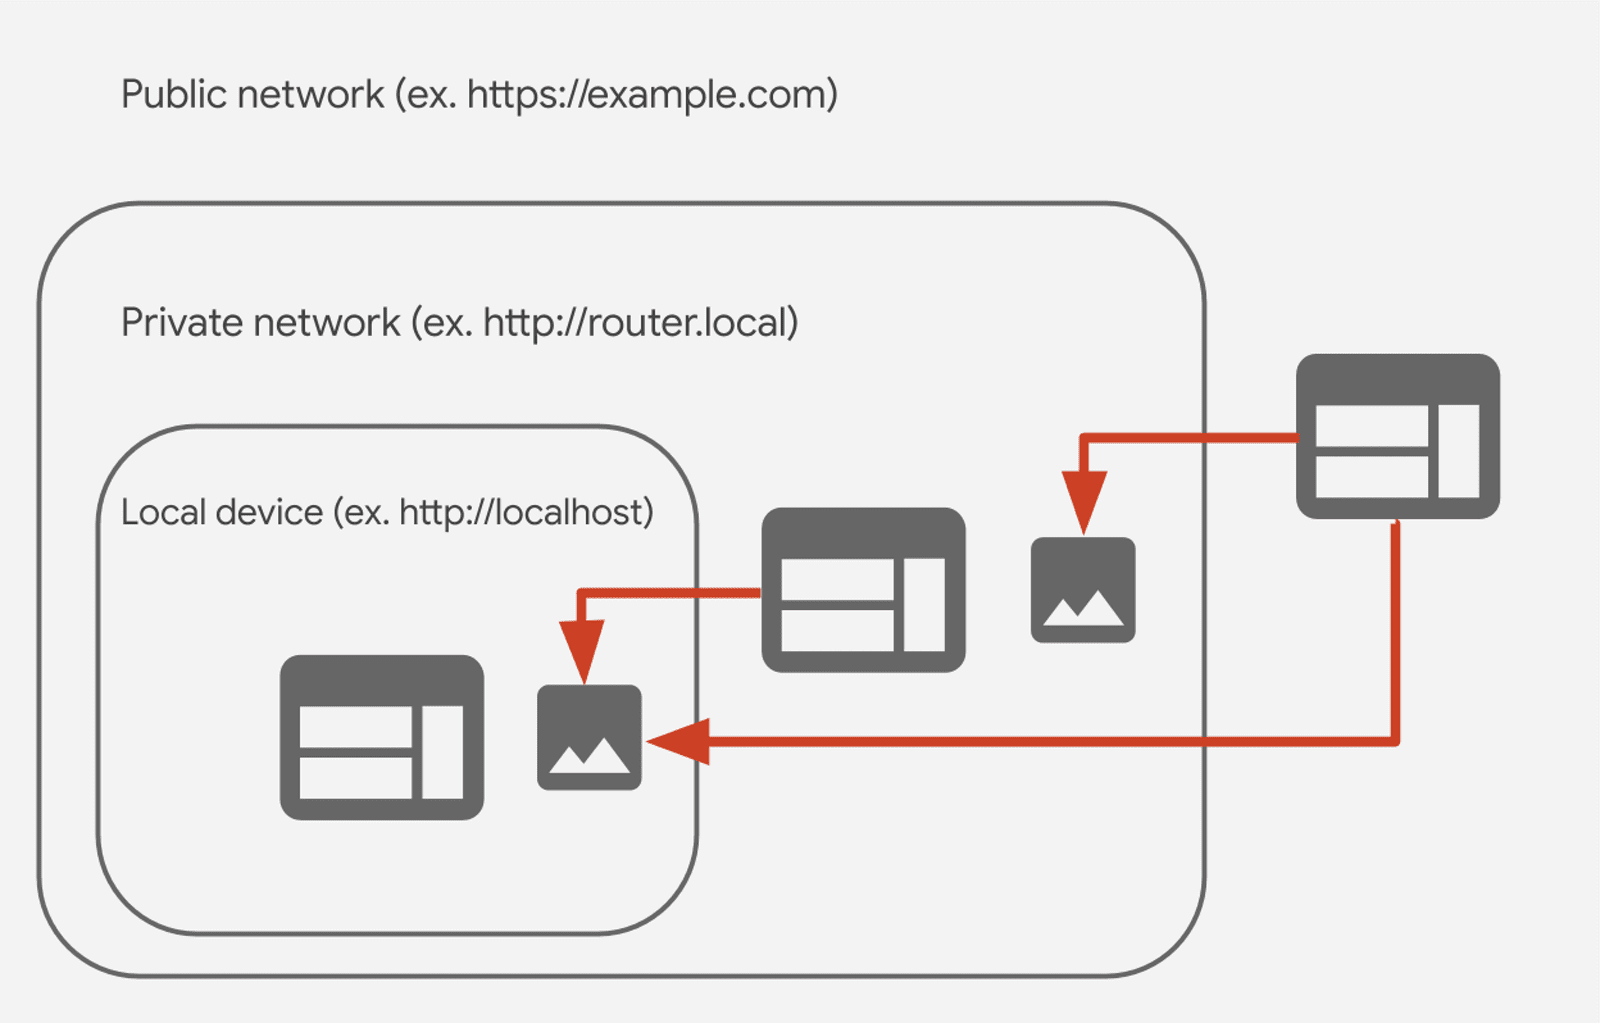 ارتباط بین شبکه های عمومی، خصوصی و محلی در دسترسی به شبکه خصوصی (CORS-RFC1918).